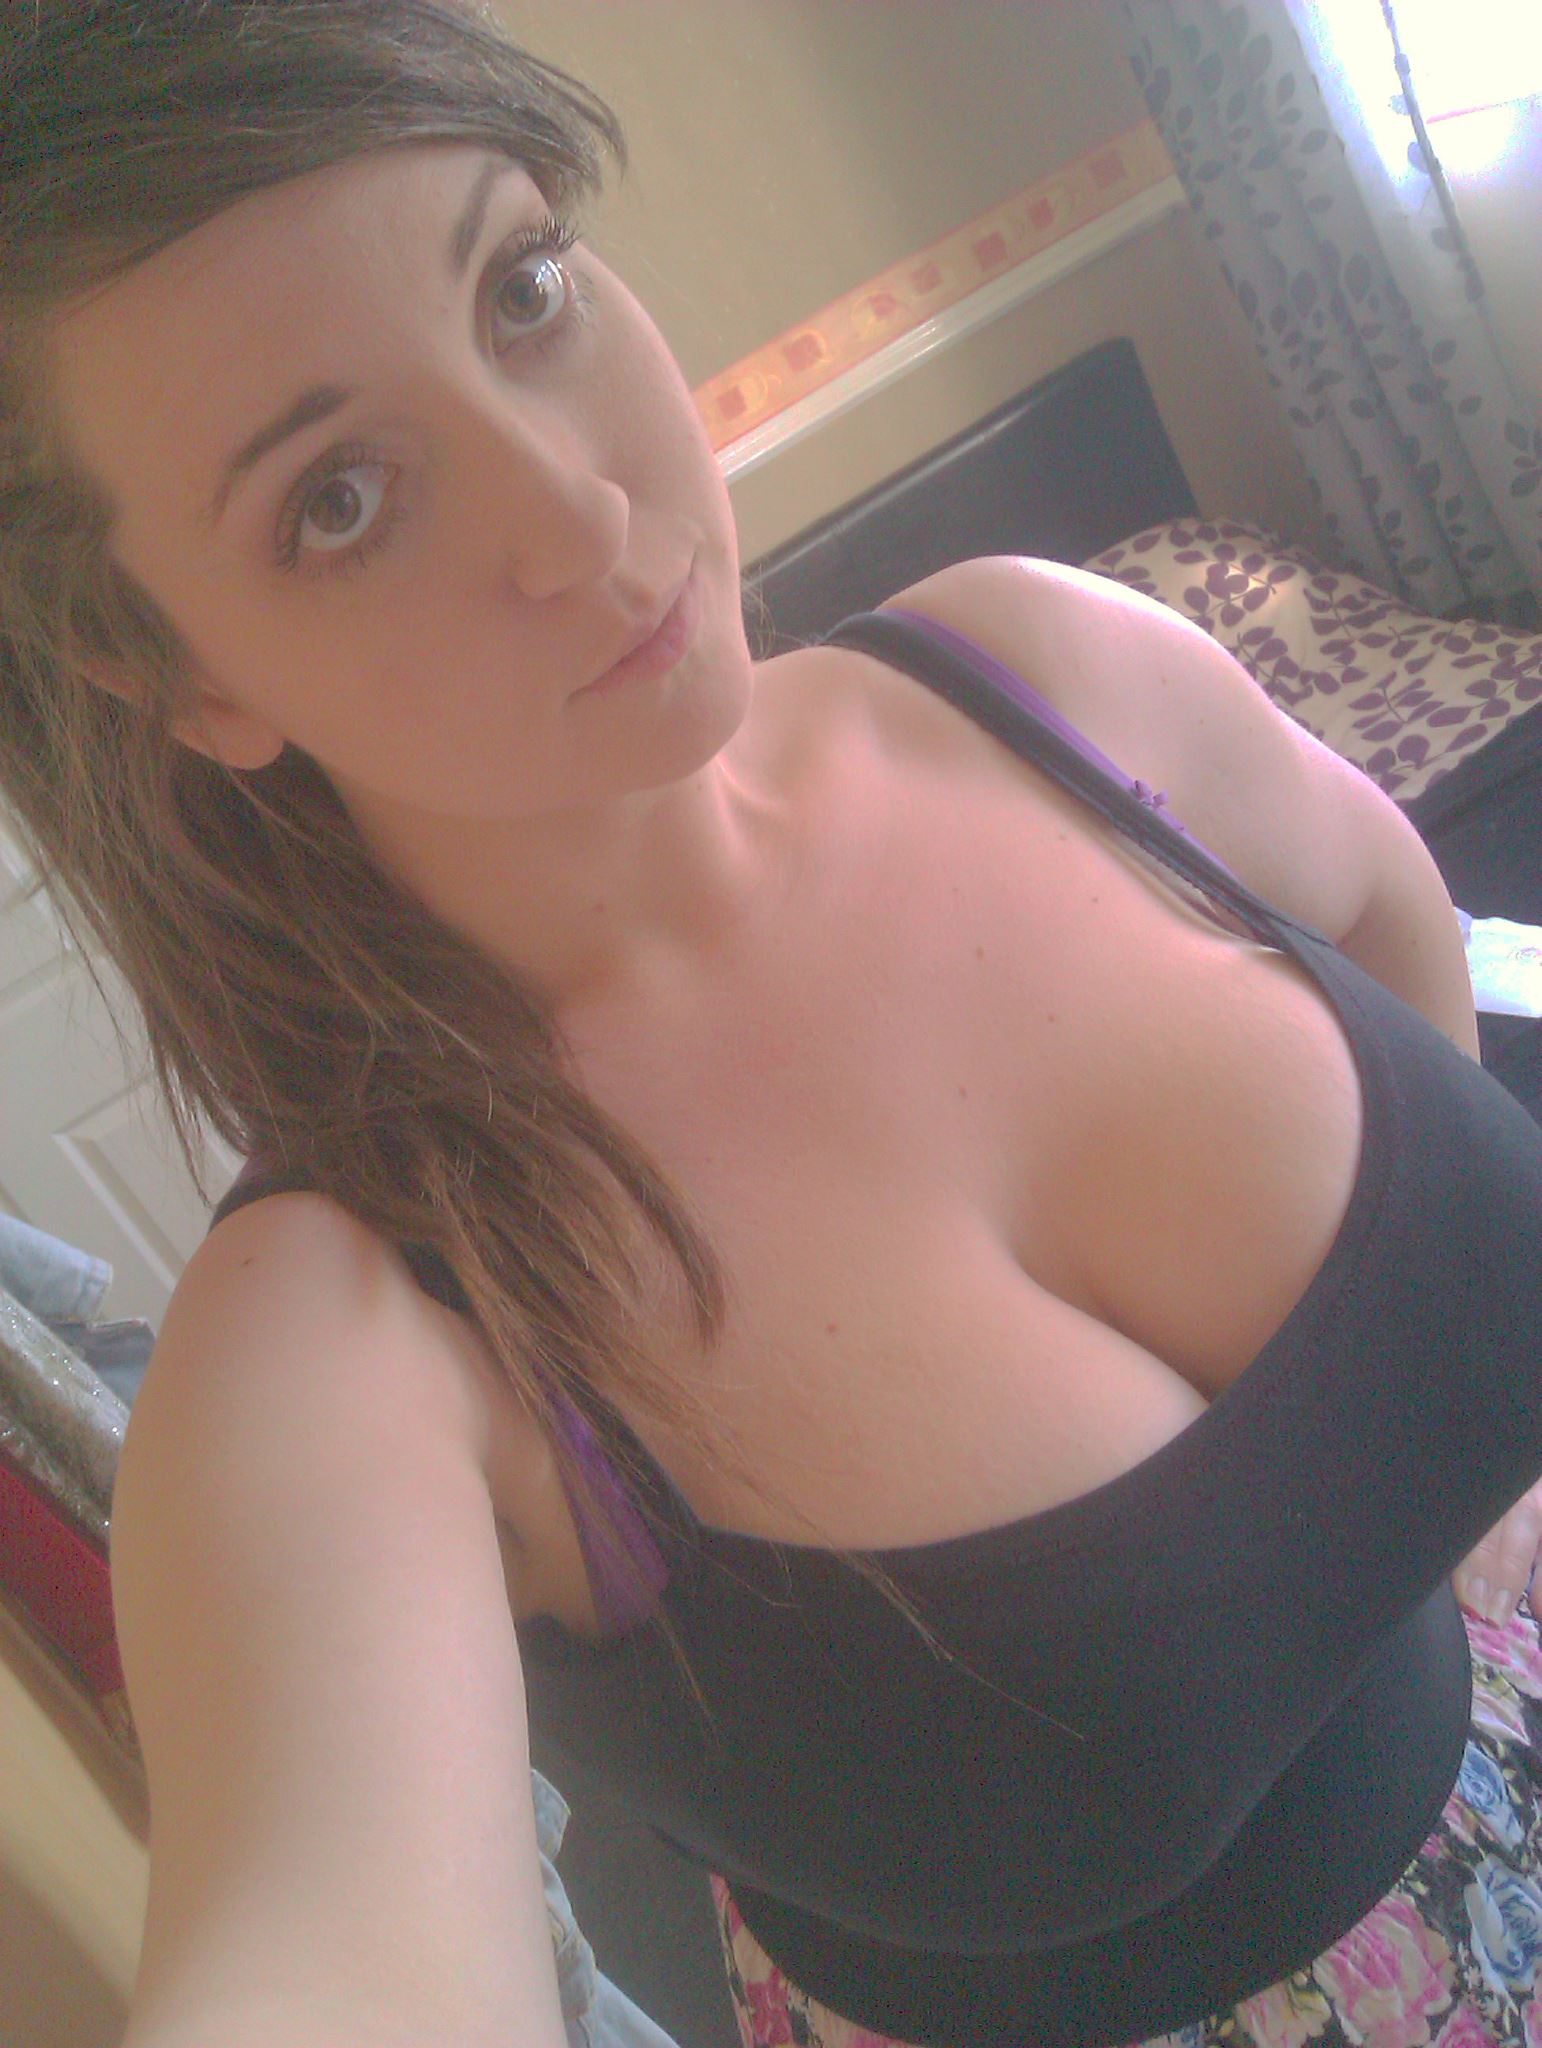 adult huge cleavage selfie free pics gallery